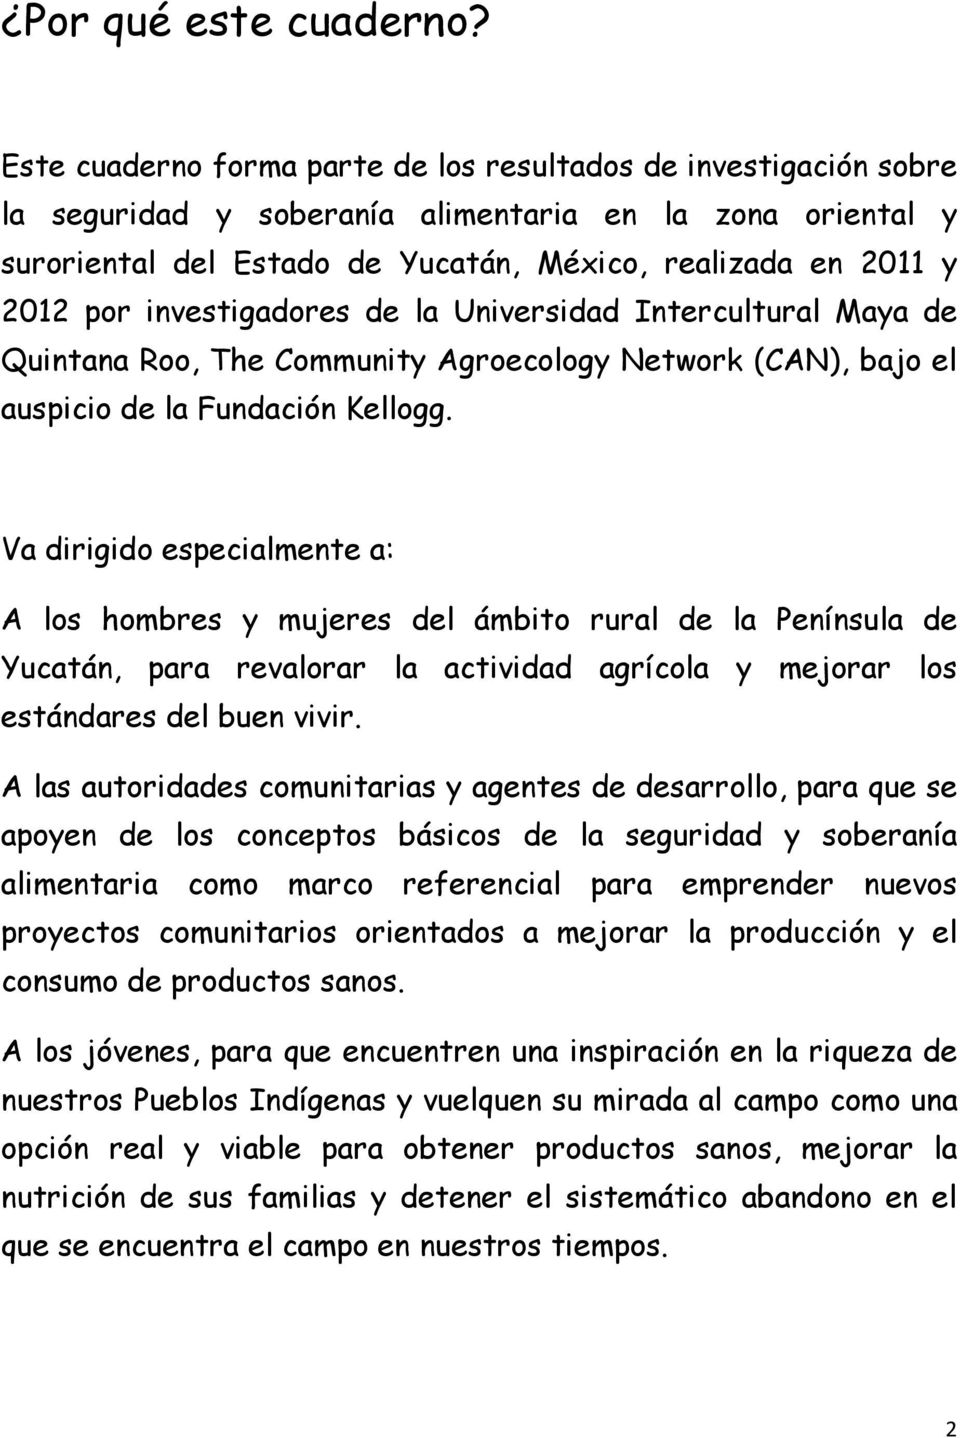 investigadores de la Universidad Intercultural Maya de Quintana Roo, The Community Agroecology Network (CAN), bajo el auspicio de la Fundación Kellogg.